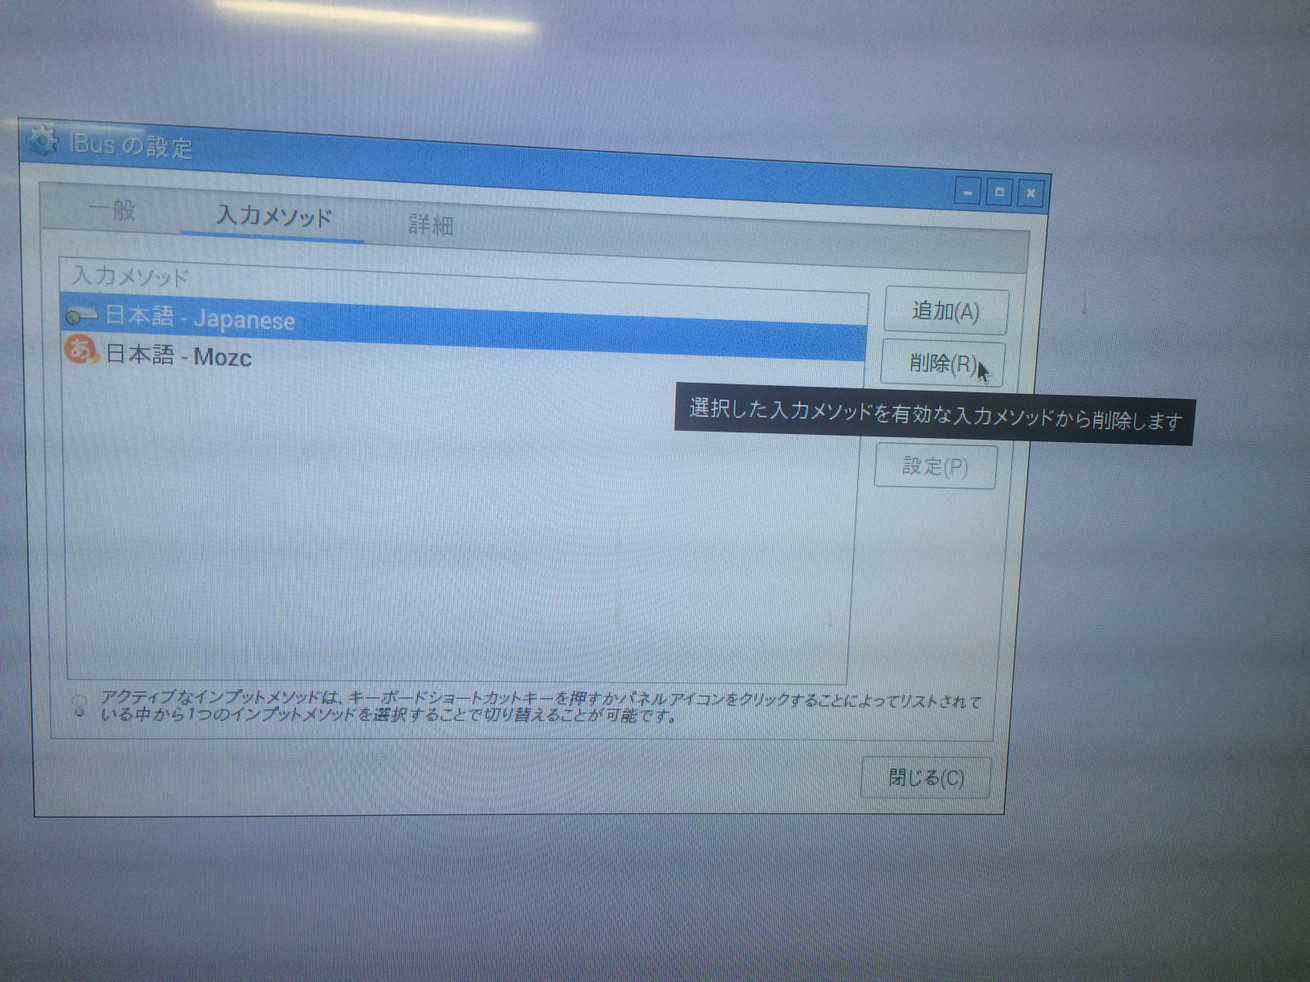 iBusの設定から「日本語 – Japanese」を削除している様子